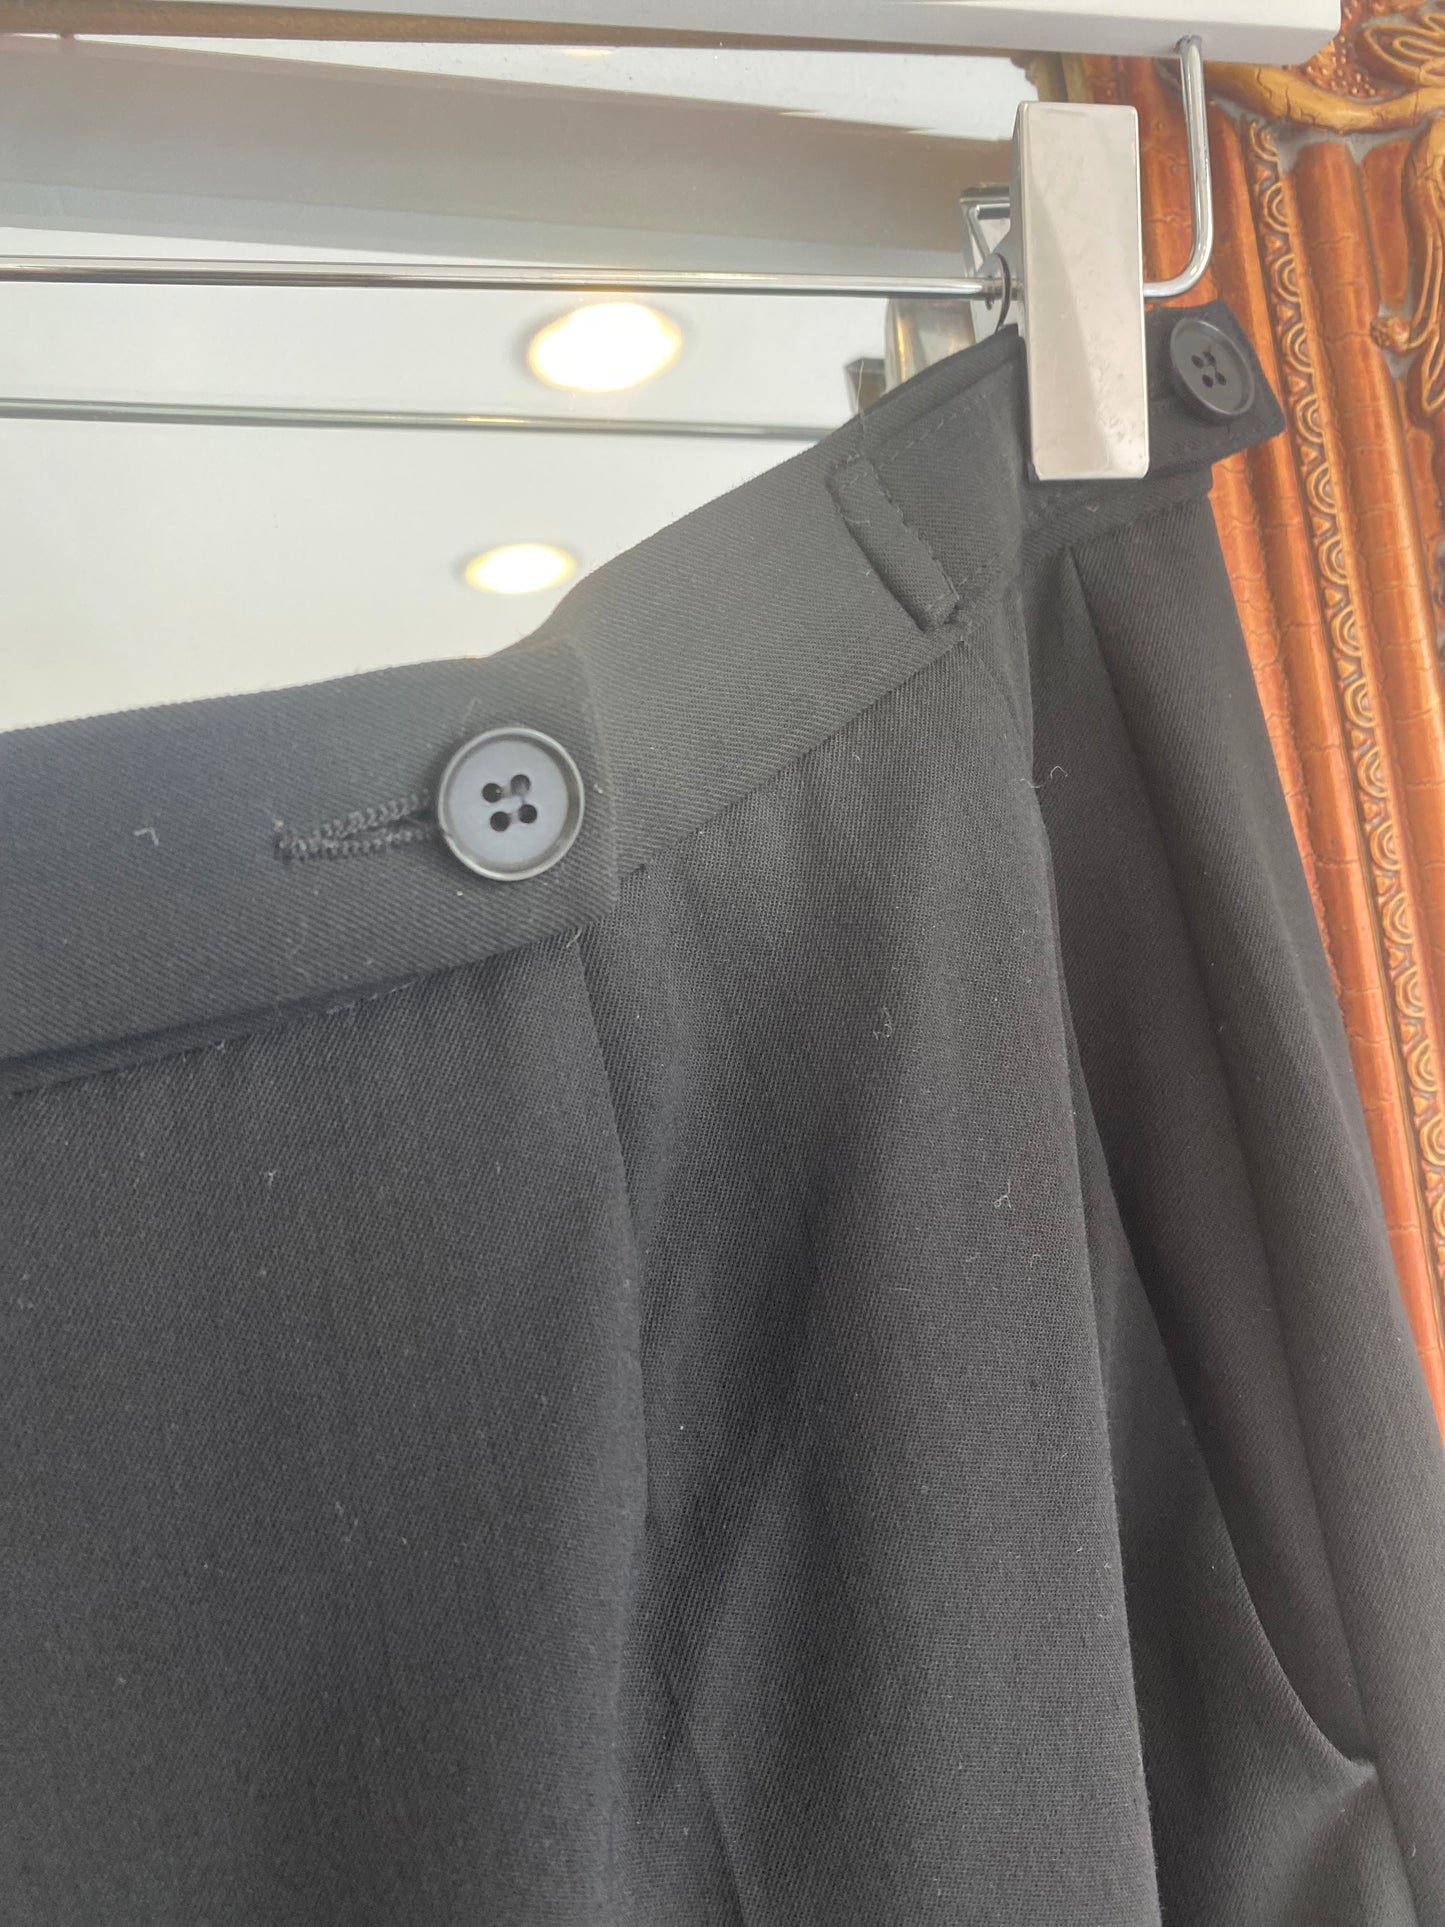 Emporio Armani Black Trouser Suit Size 10